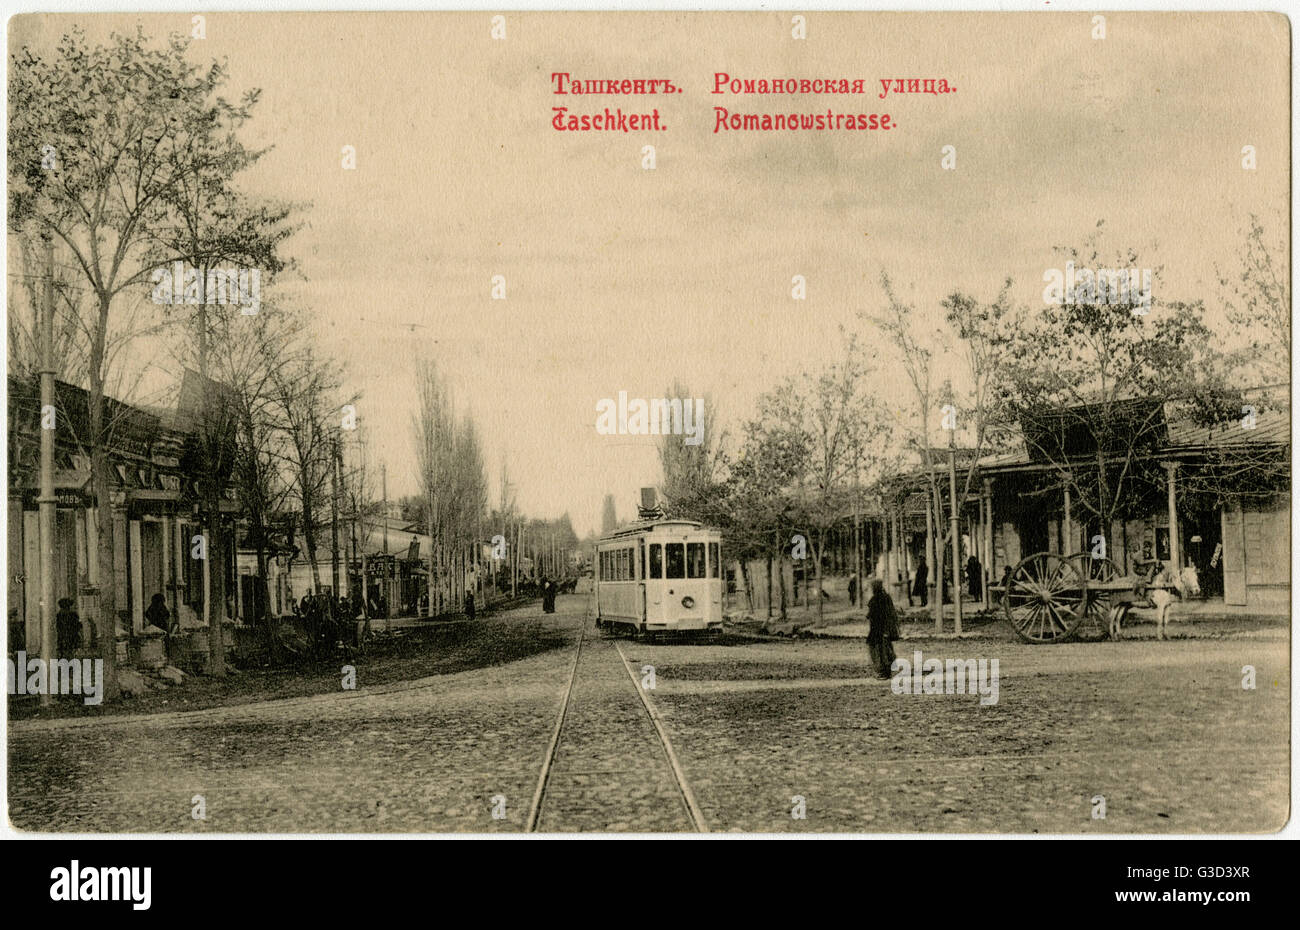 Tashkent, Uzbekistan - Romanov Street Stock Photo